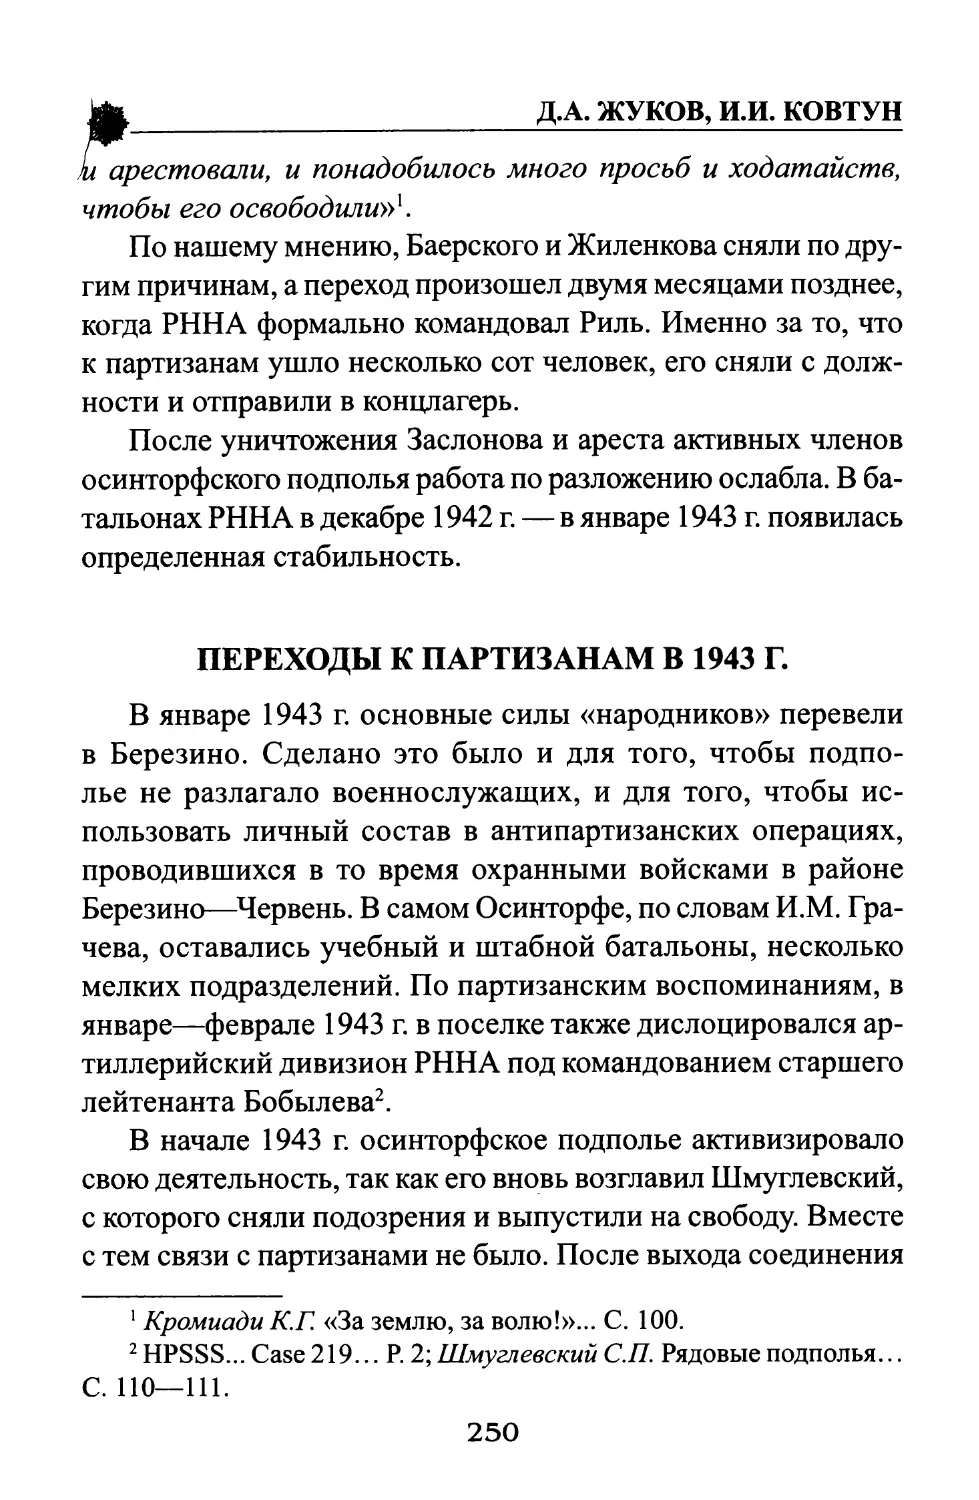 Переходы к партизанам в 1943 г.